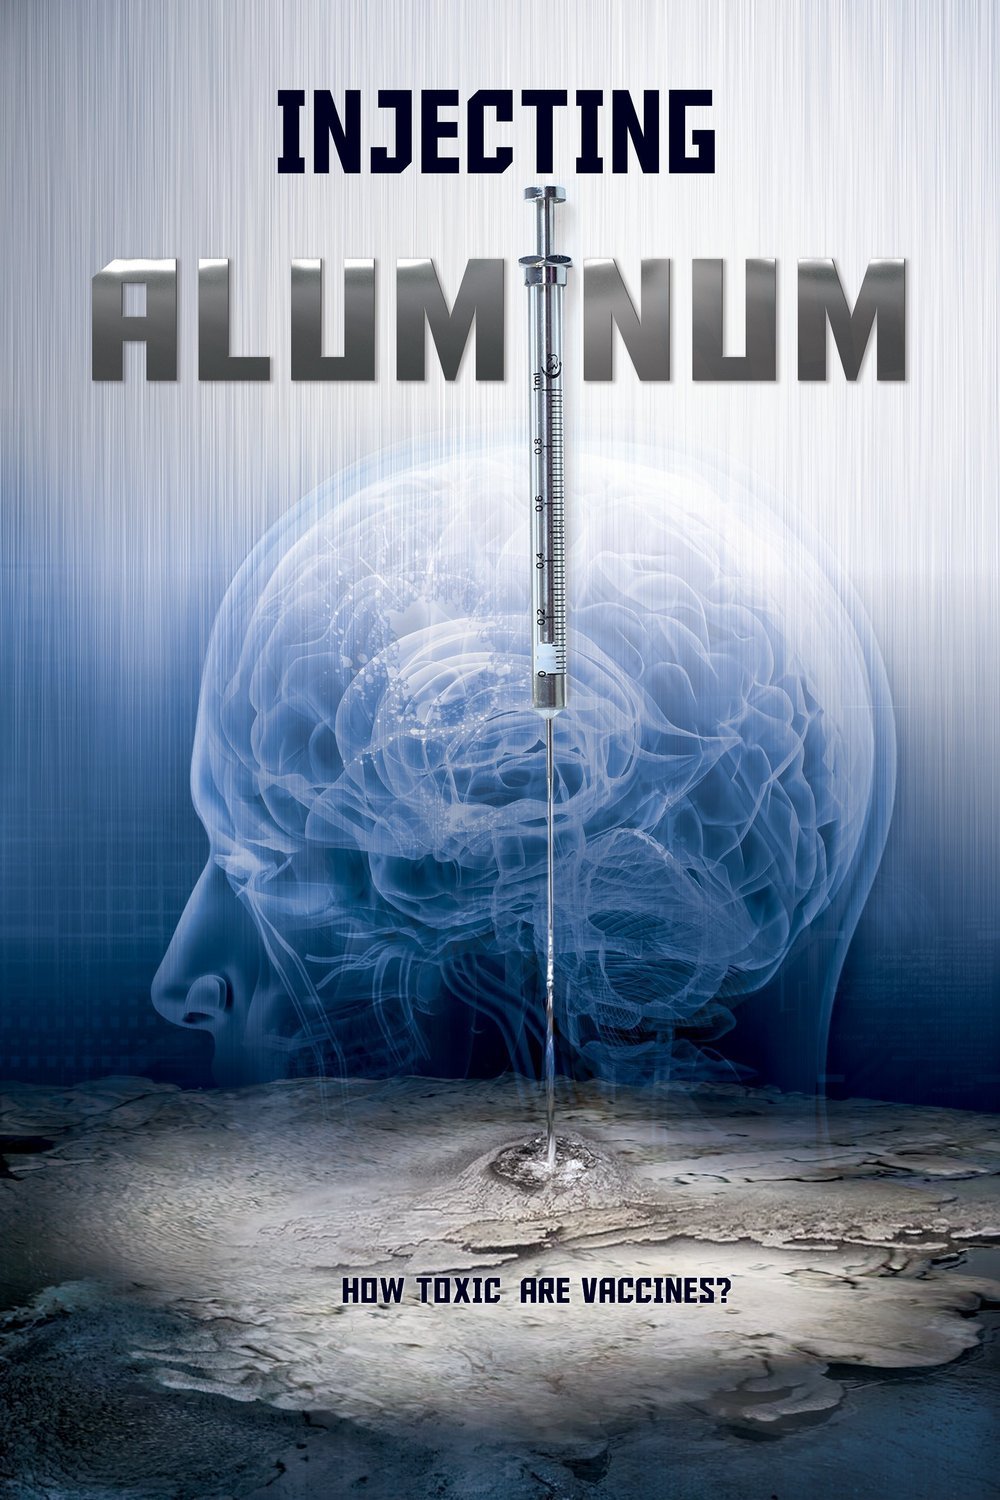 L'affiche du film Injecting Aluminum